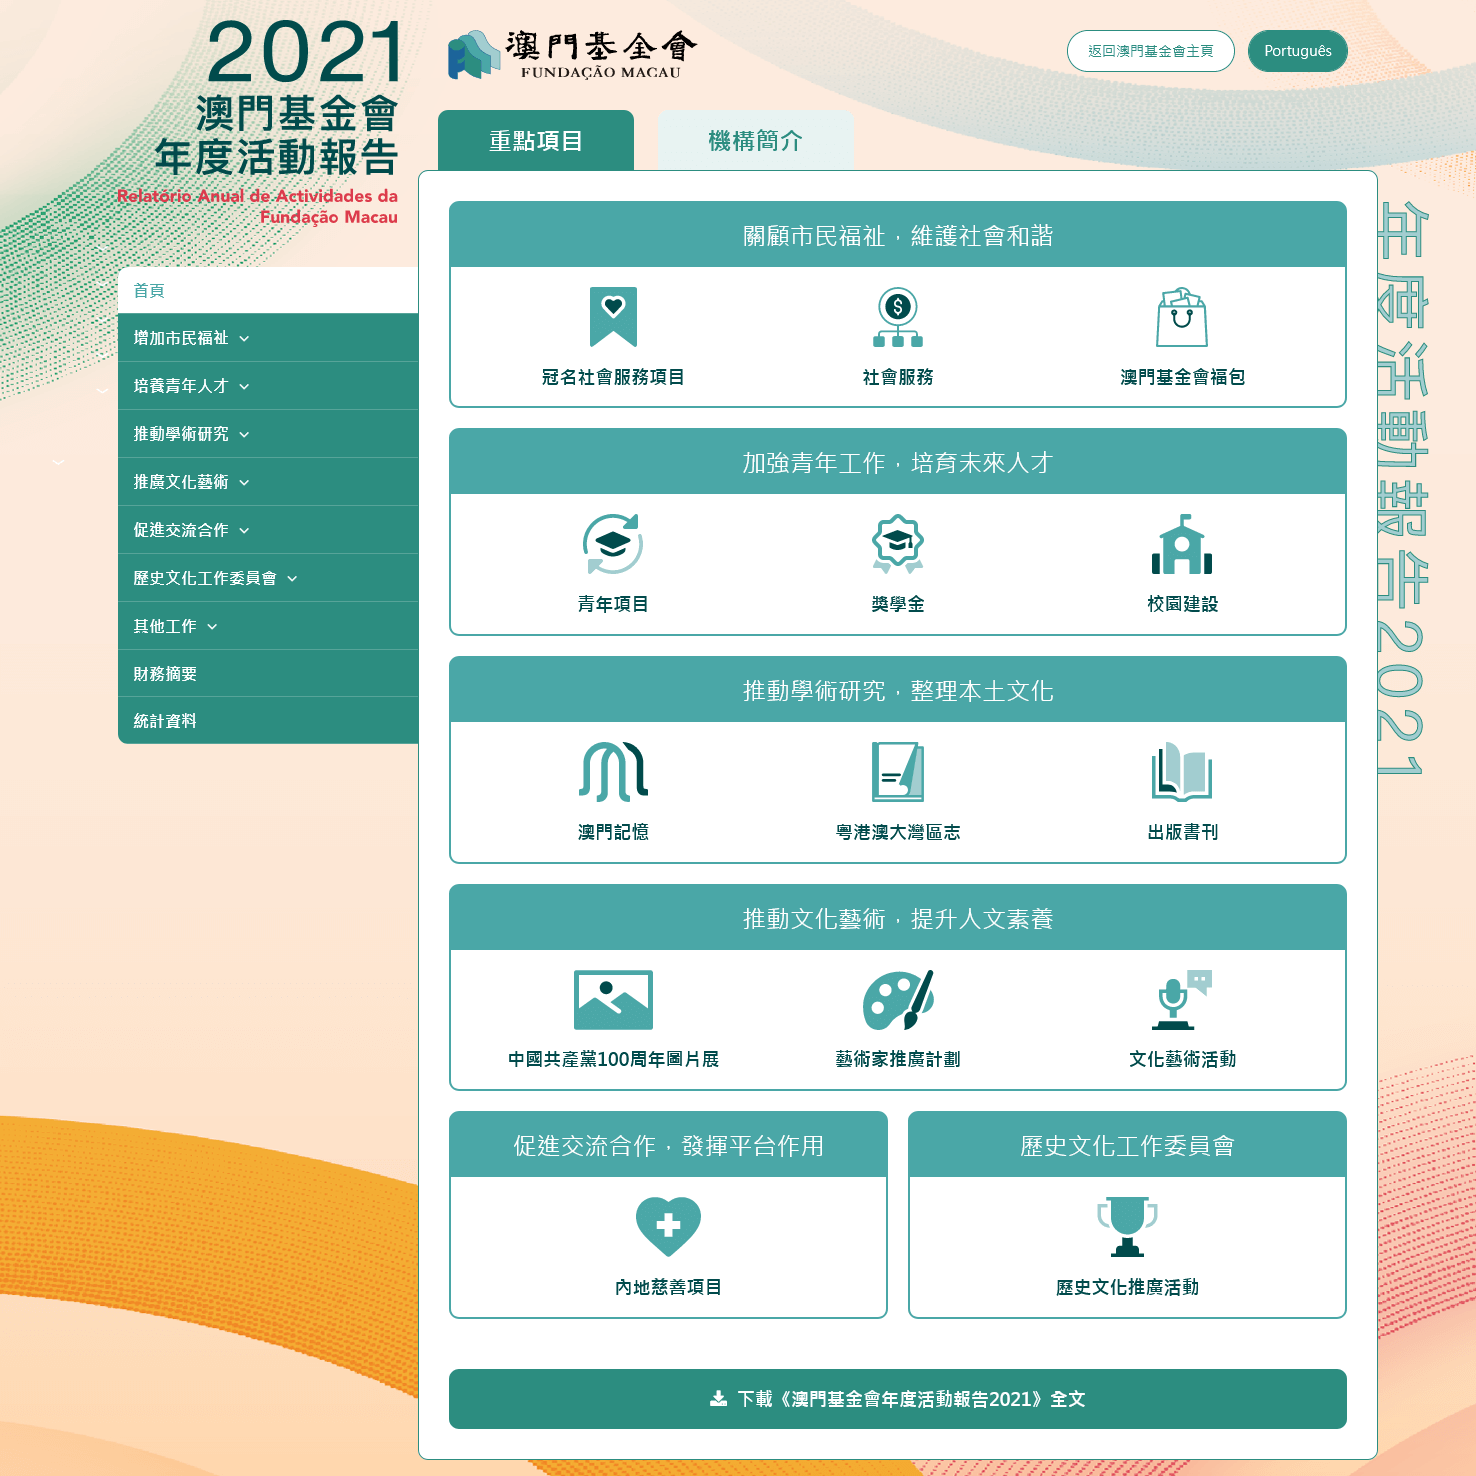 澳門基金會年度活動報告2021